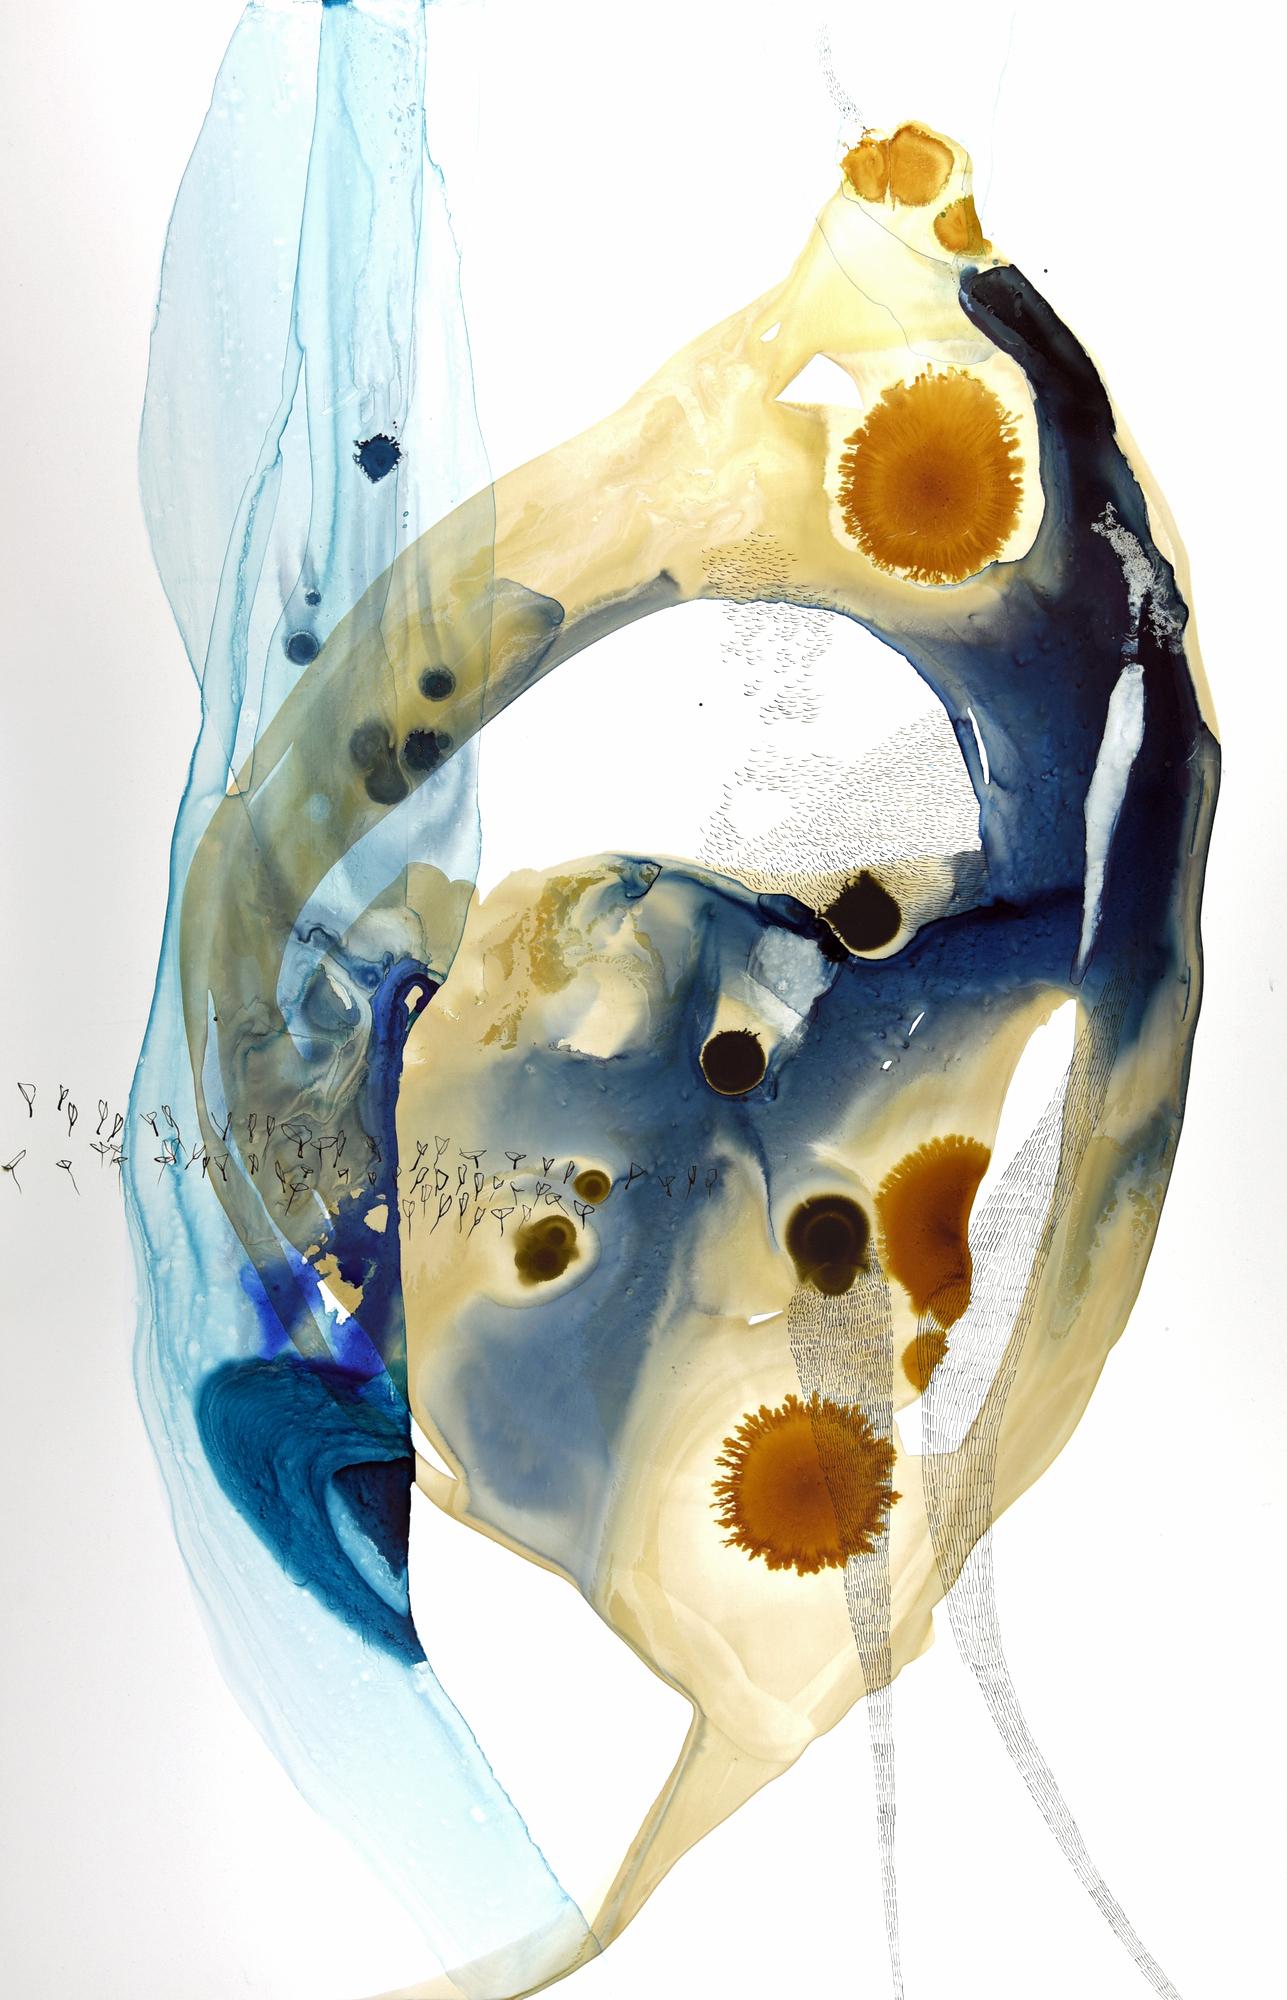 Ana Zanic
Ursprung Wässrig (W-2022-3-2), 2022
Aquarell auf Yupo-Papier
40 x 26 Zoll.
(zan252)

Dieses zeitgenössische abstrakte Aquarell zeigt große, gestische Striche aus blauer, blaugrüner und brauner Farbe in aquatischen, organischen